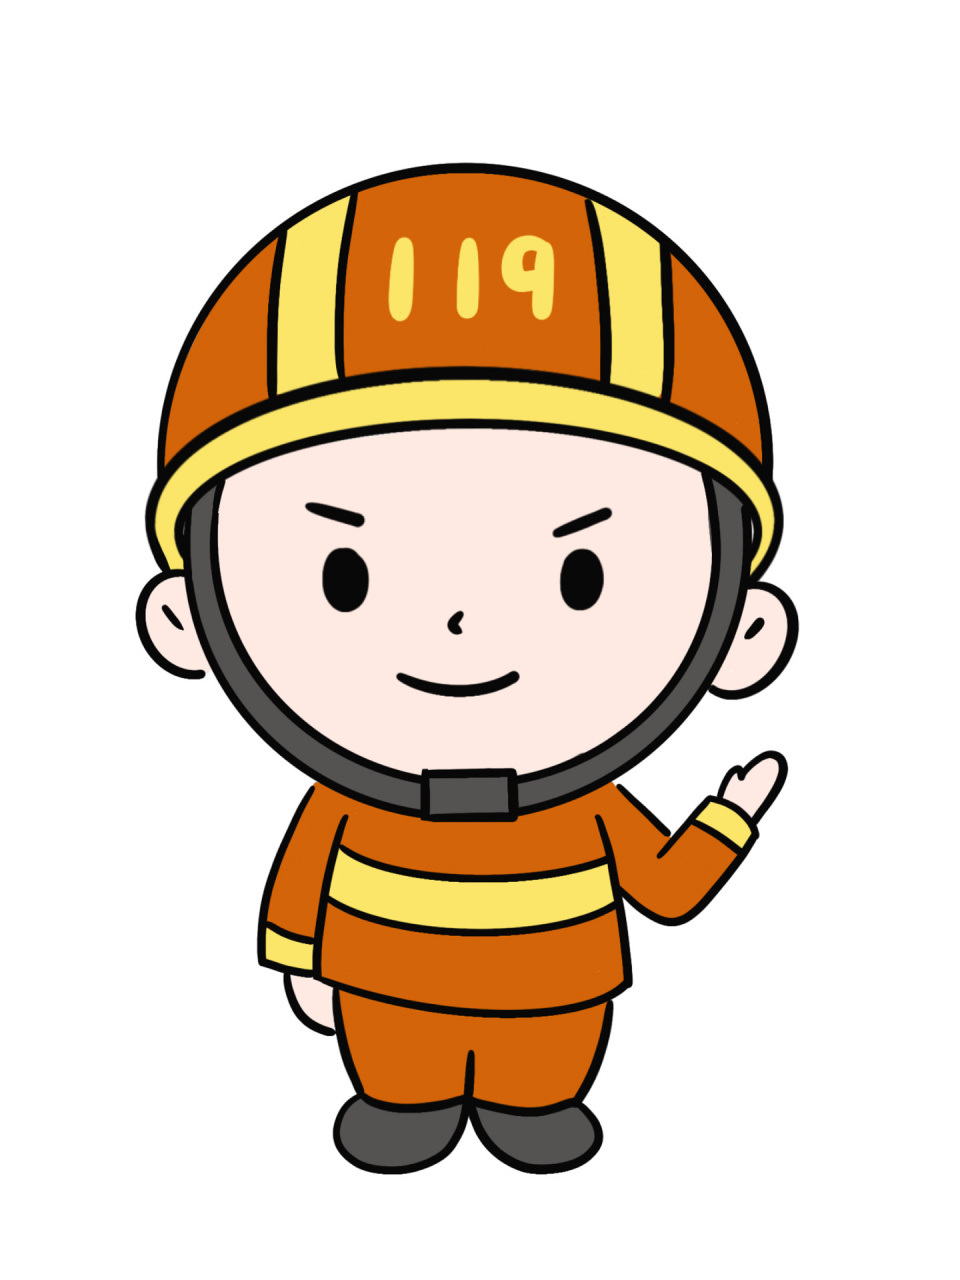 简笔画教程分享 消防员